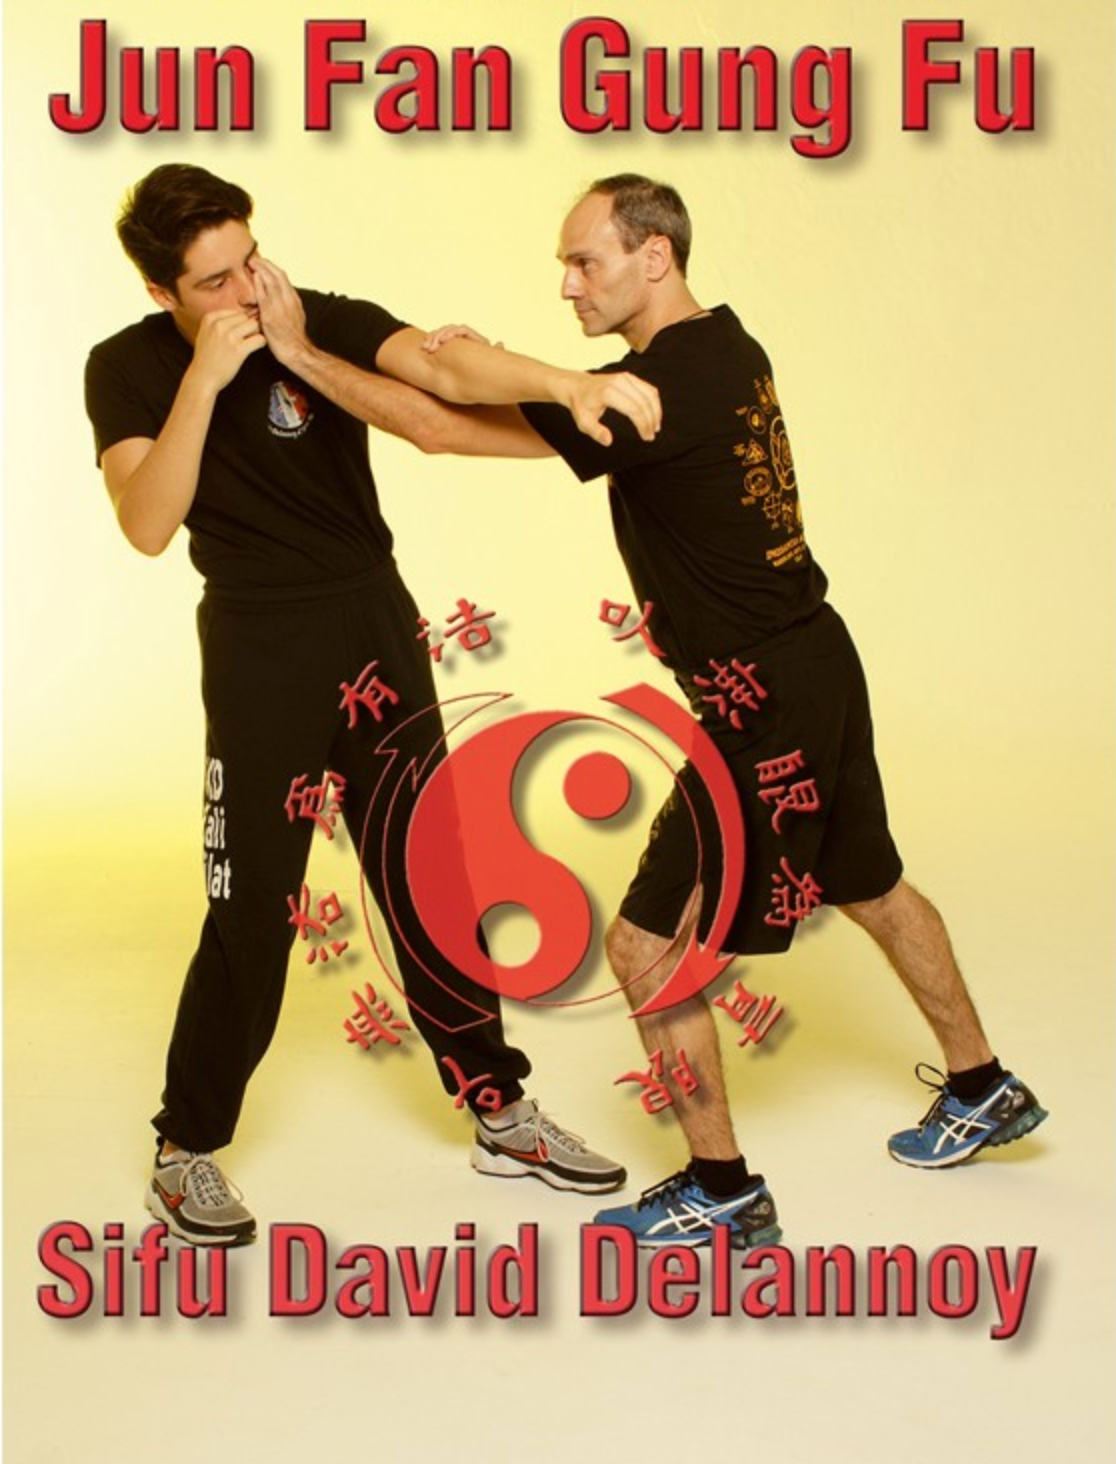 Jun Fan Gung Fu DVD with David Delannoy - Budovideos Inc